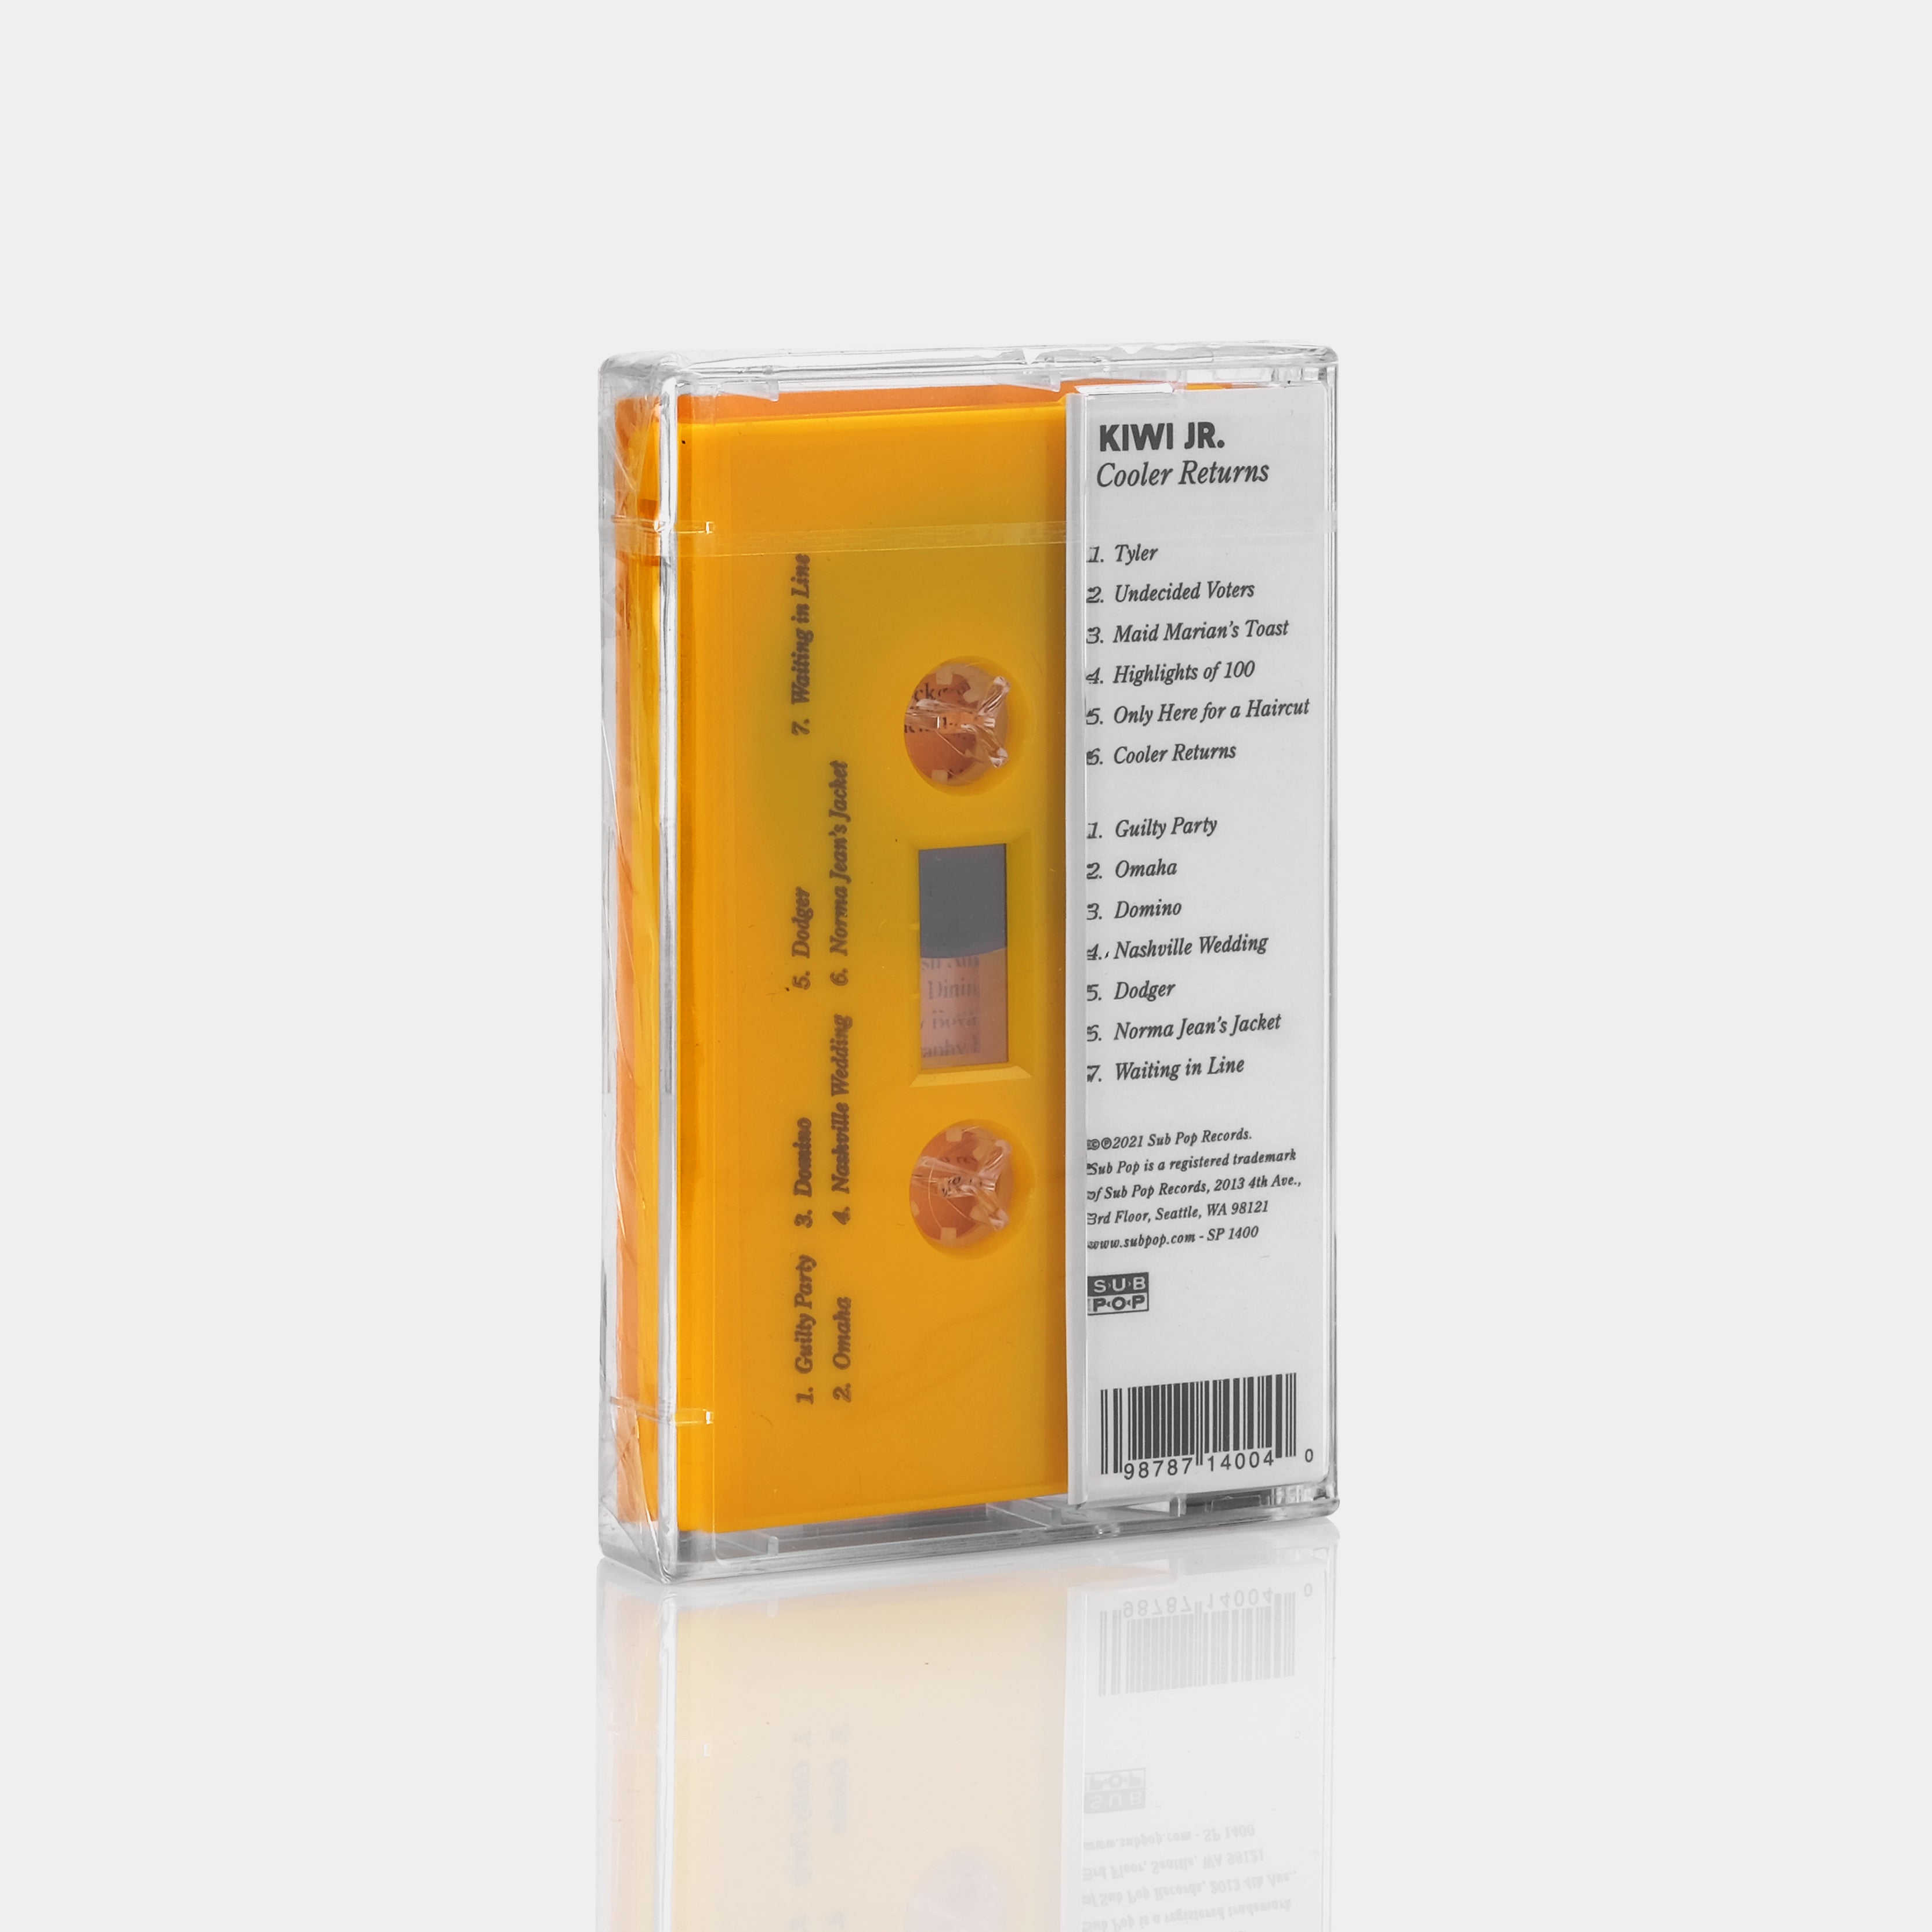 Kiwi Jr. - Cooler Returns Cassette Tape